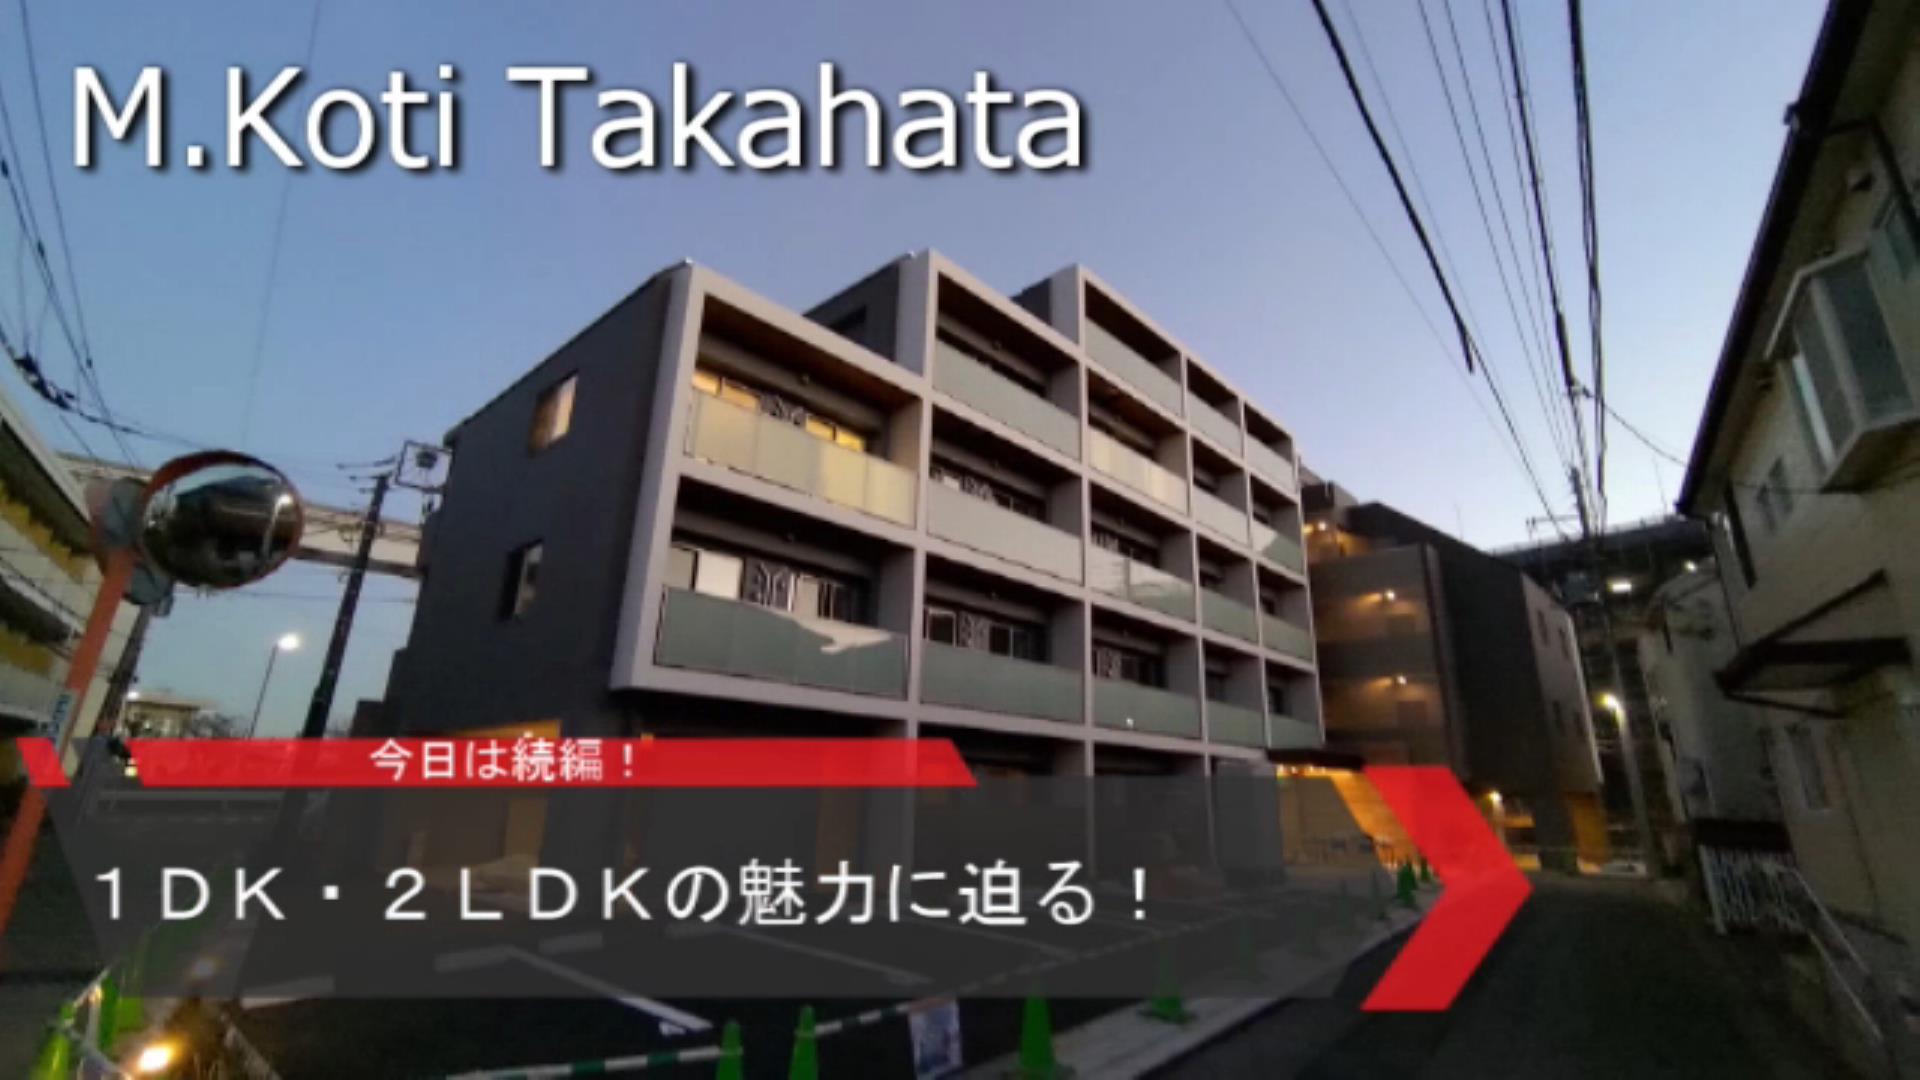 【2024年1月完成!】新築賃貸マンション</br>「M.Koti Takahata」紹介動画 part2